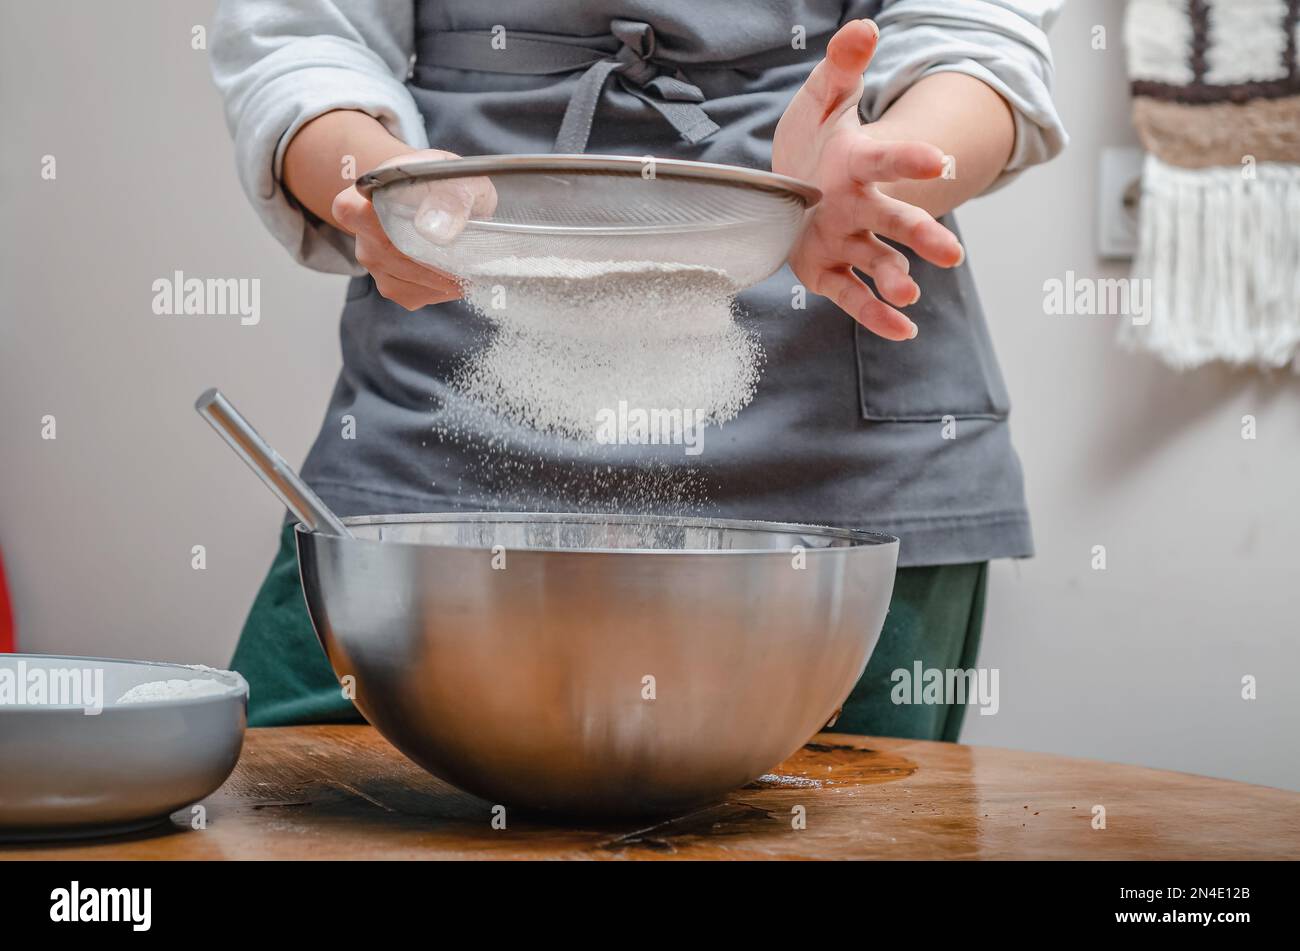 Kochen Sie Mehl durch das Sieb, um Teig zu machen Stockfotografie - Alamy